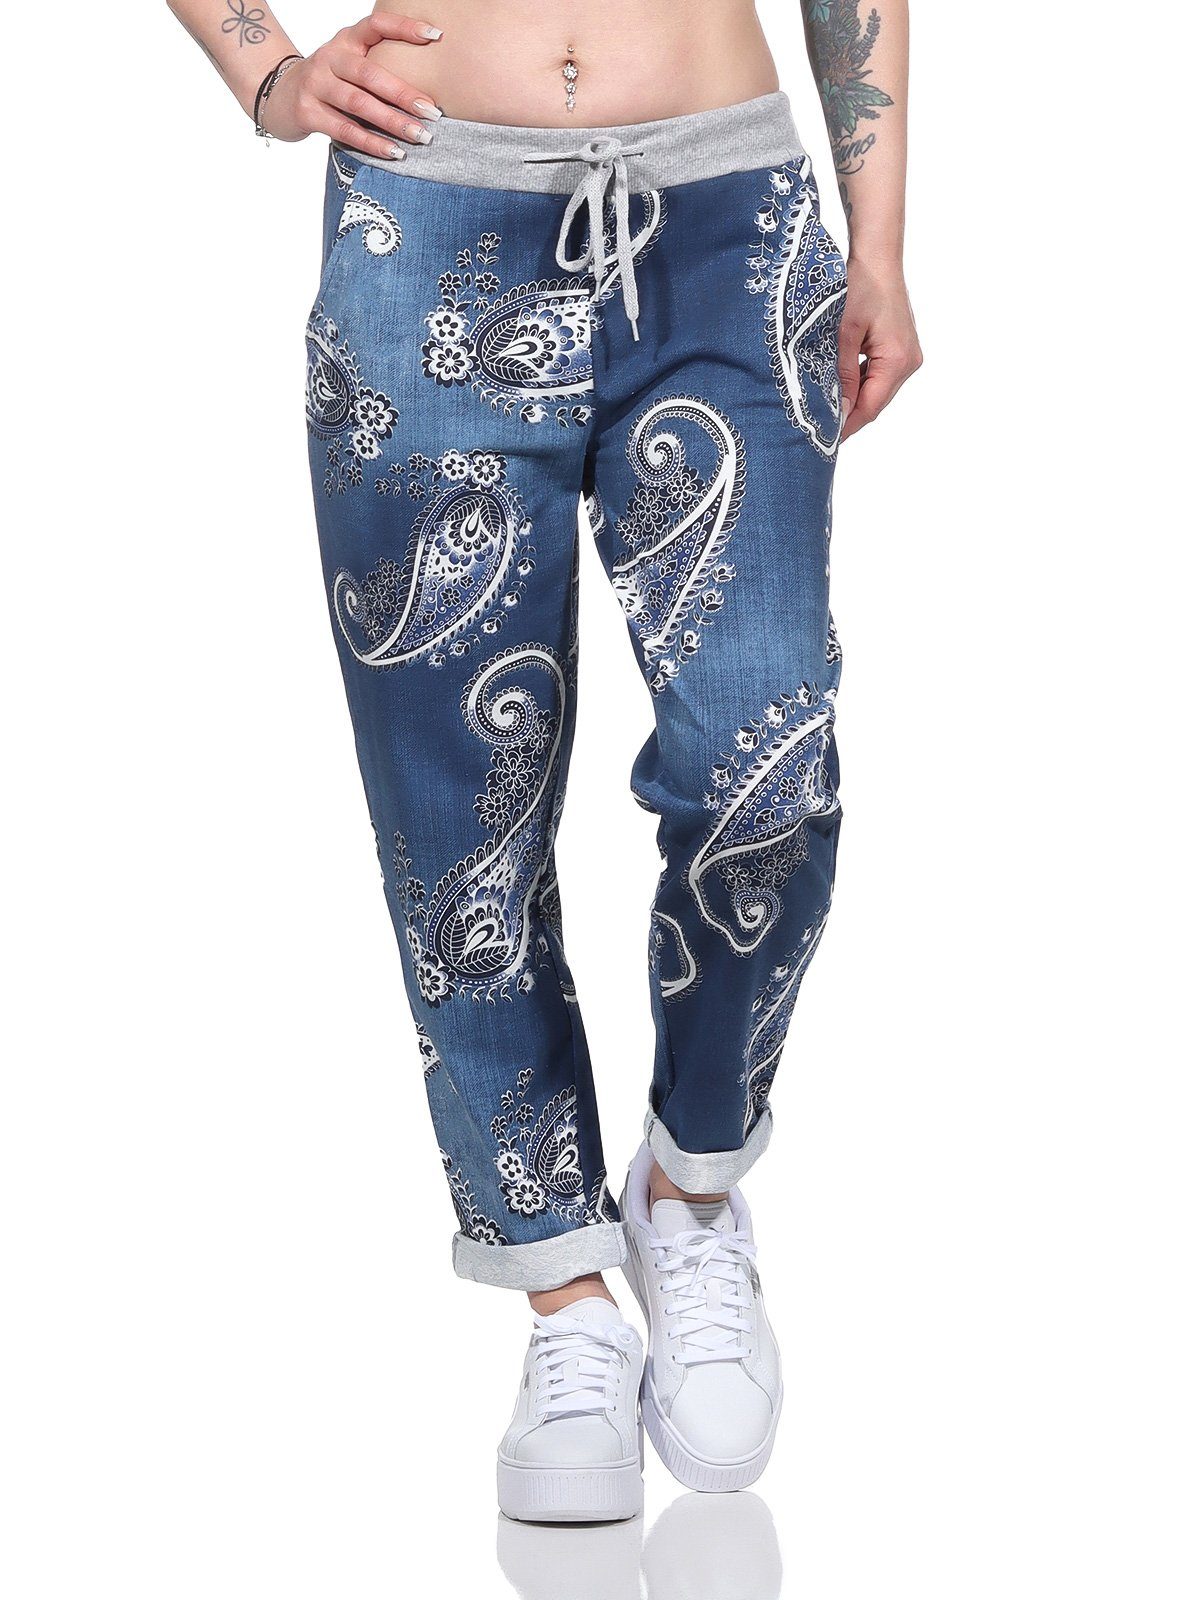 Aurela Damenmode Jogger Pants Freizeithose leichte Damen Haushose in moderner Jeansoptik mit elastischem Bund und Schnürung Jeansoptik dunkelblau